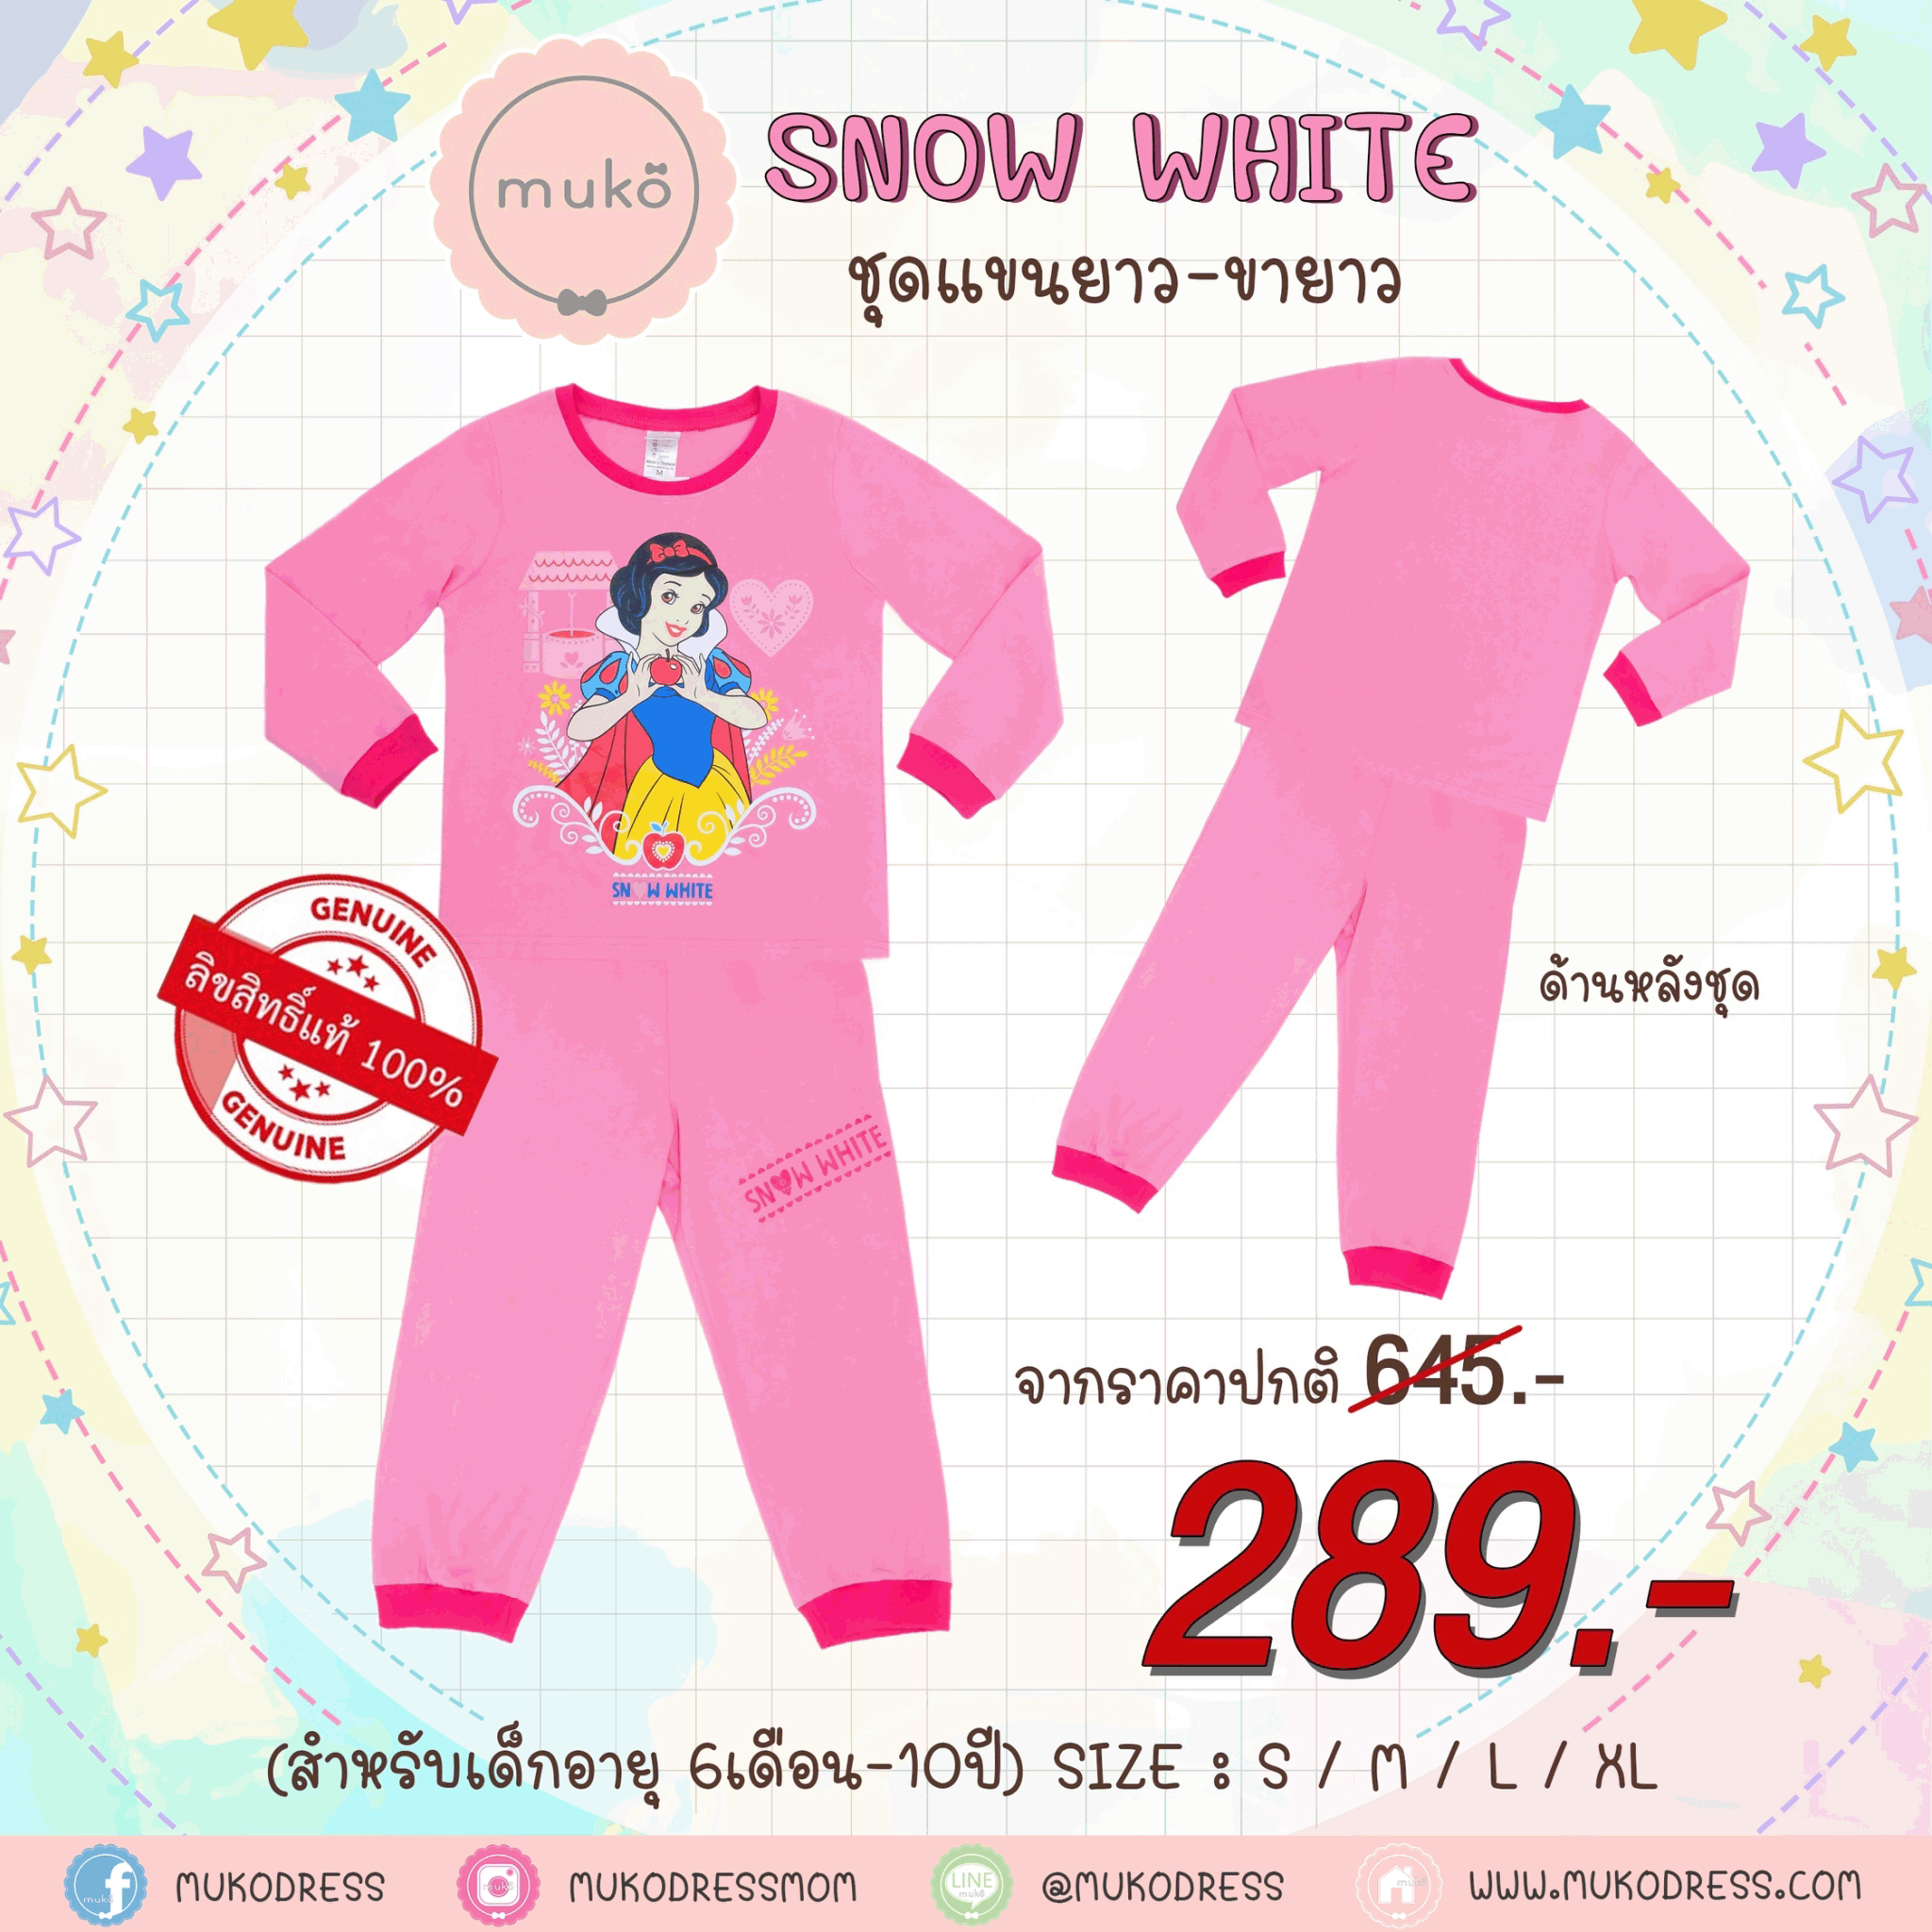 ชุดเด็ก 4-5 ขวบ แขนยาว-ขายาว (Size S) DPC127-09-XL-Pink S ลายเจ้าหญิงสโนไวท์ Snow white สีชมพู (ชมพูทั้งชุดขอบบานเย็น)